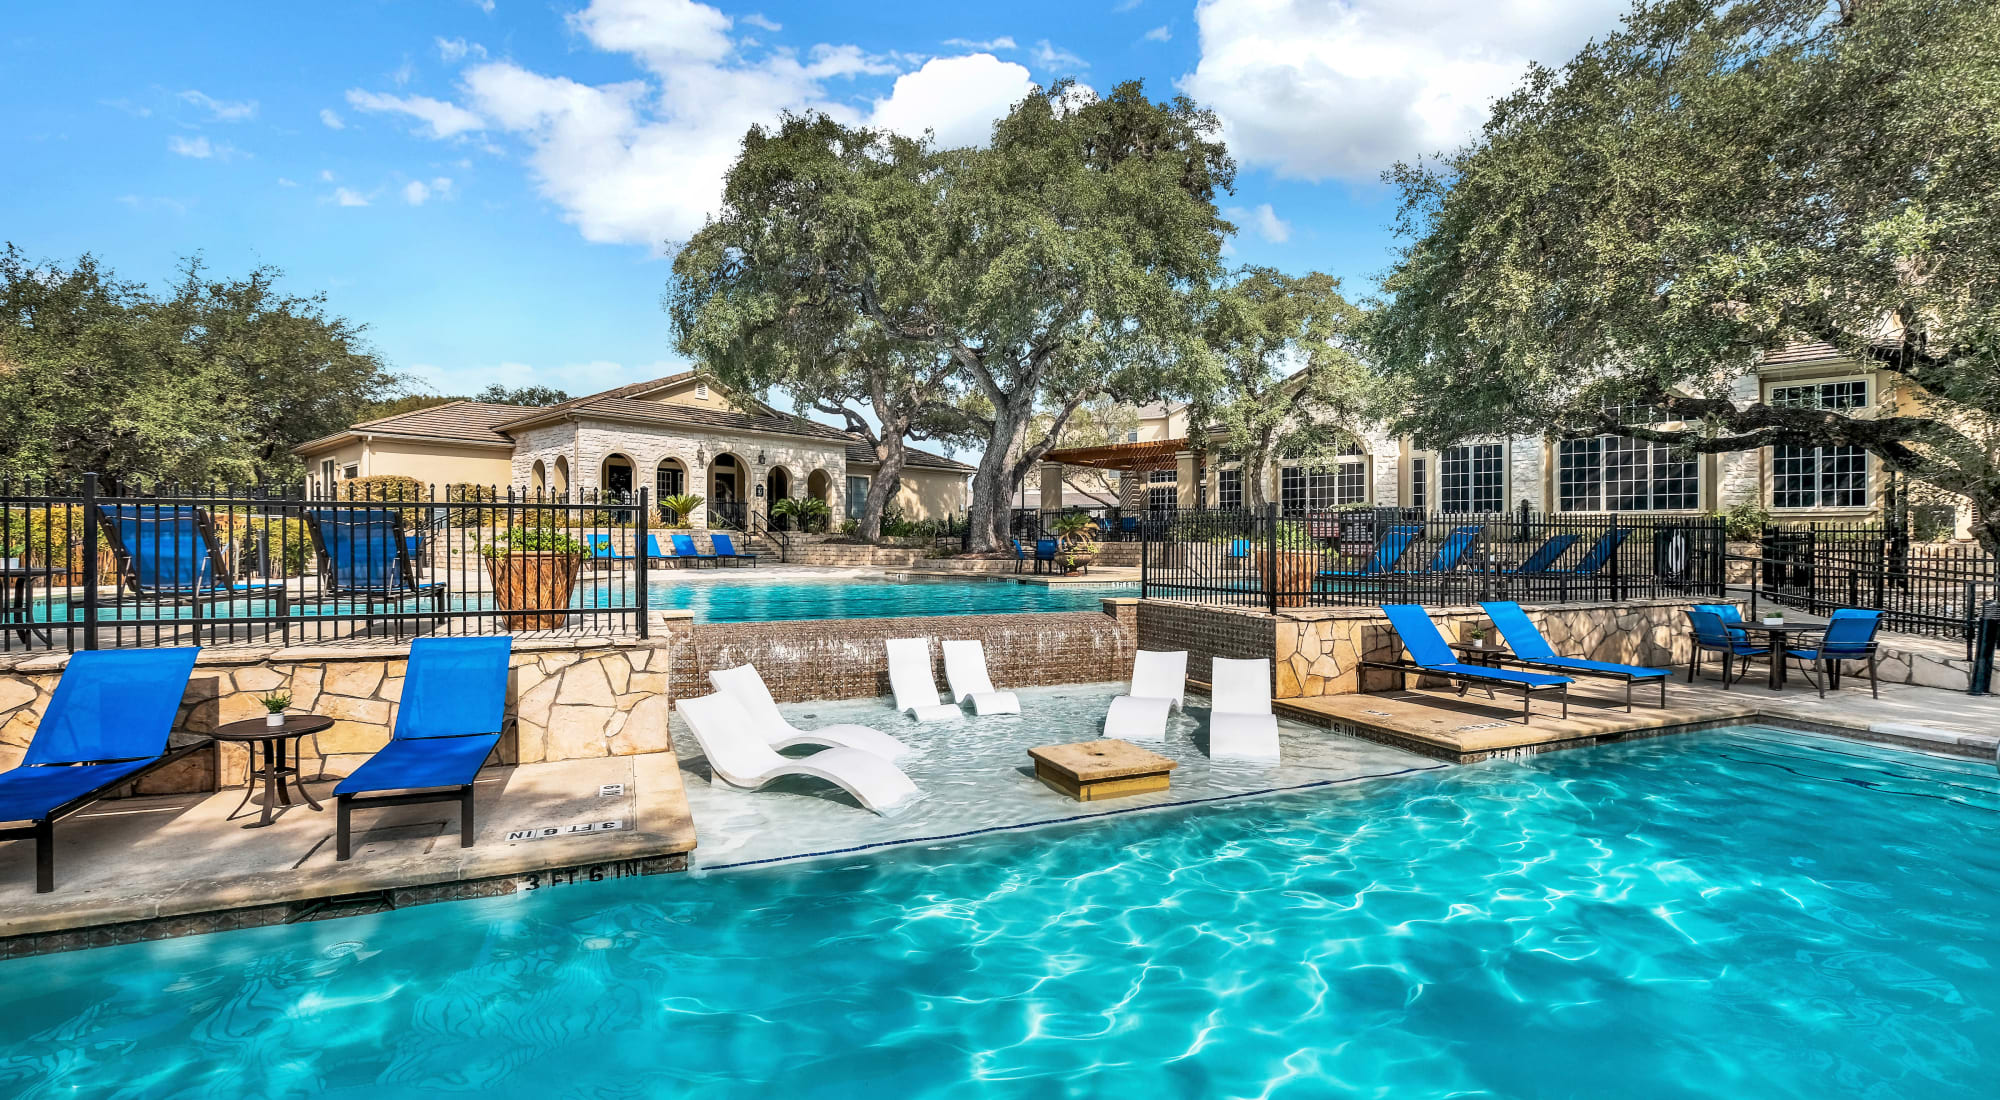 Beautiful swimming pool at Villas of Vista Del Norte in San Antonio, Texas